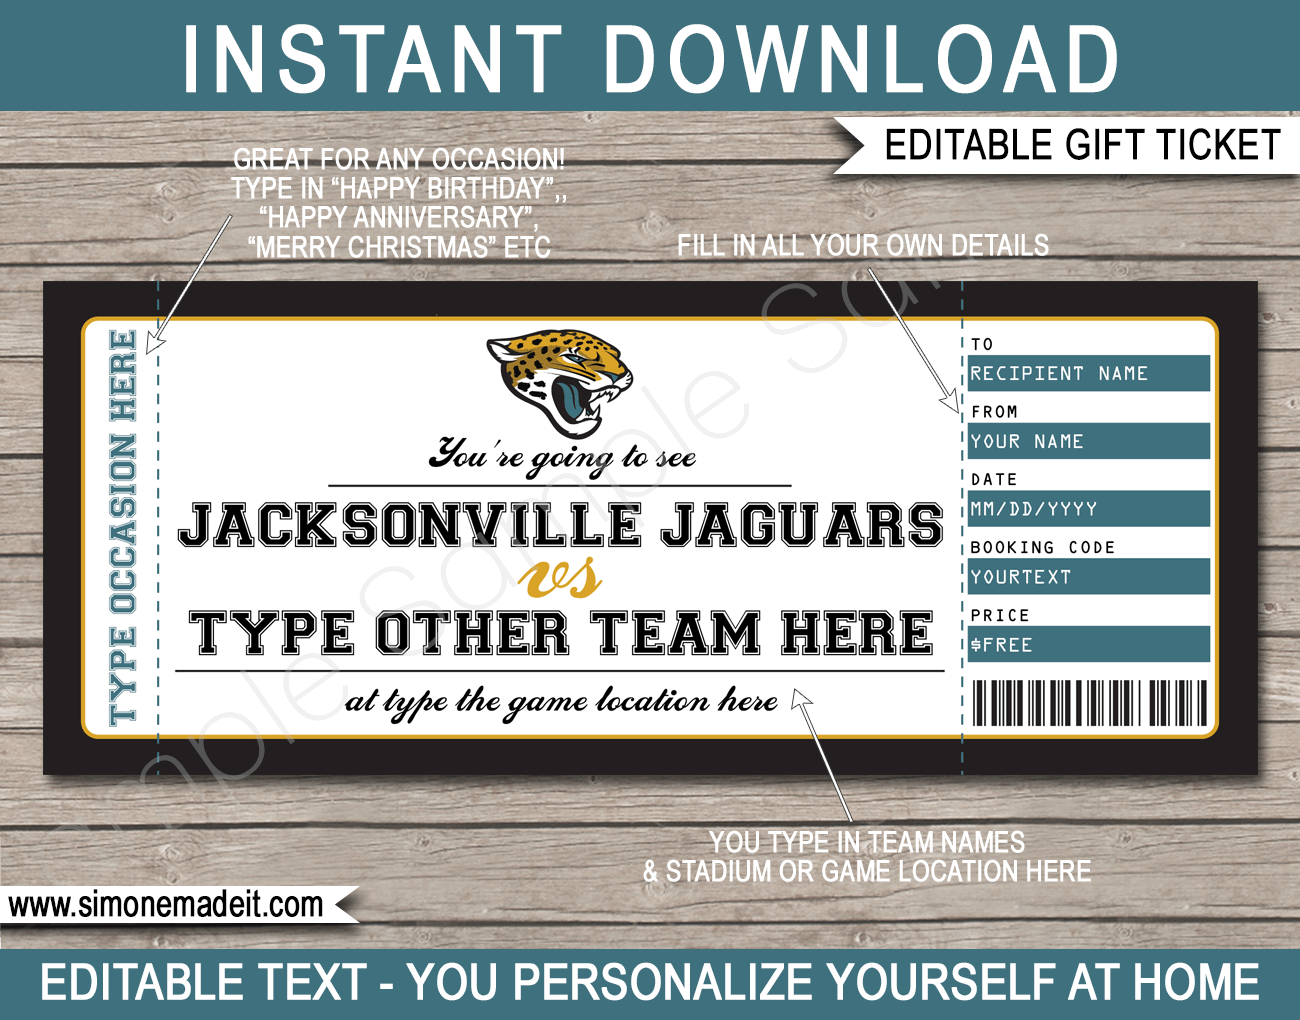 ticketmaster jacksonville jaguars